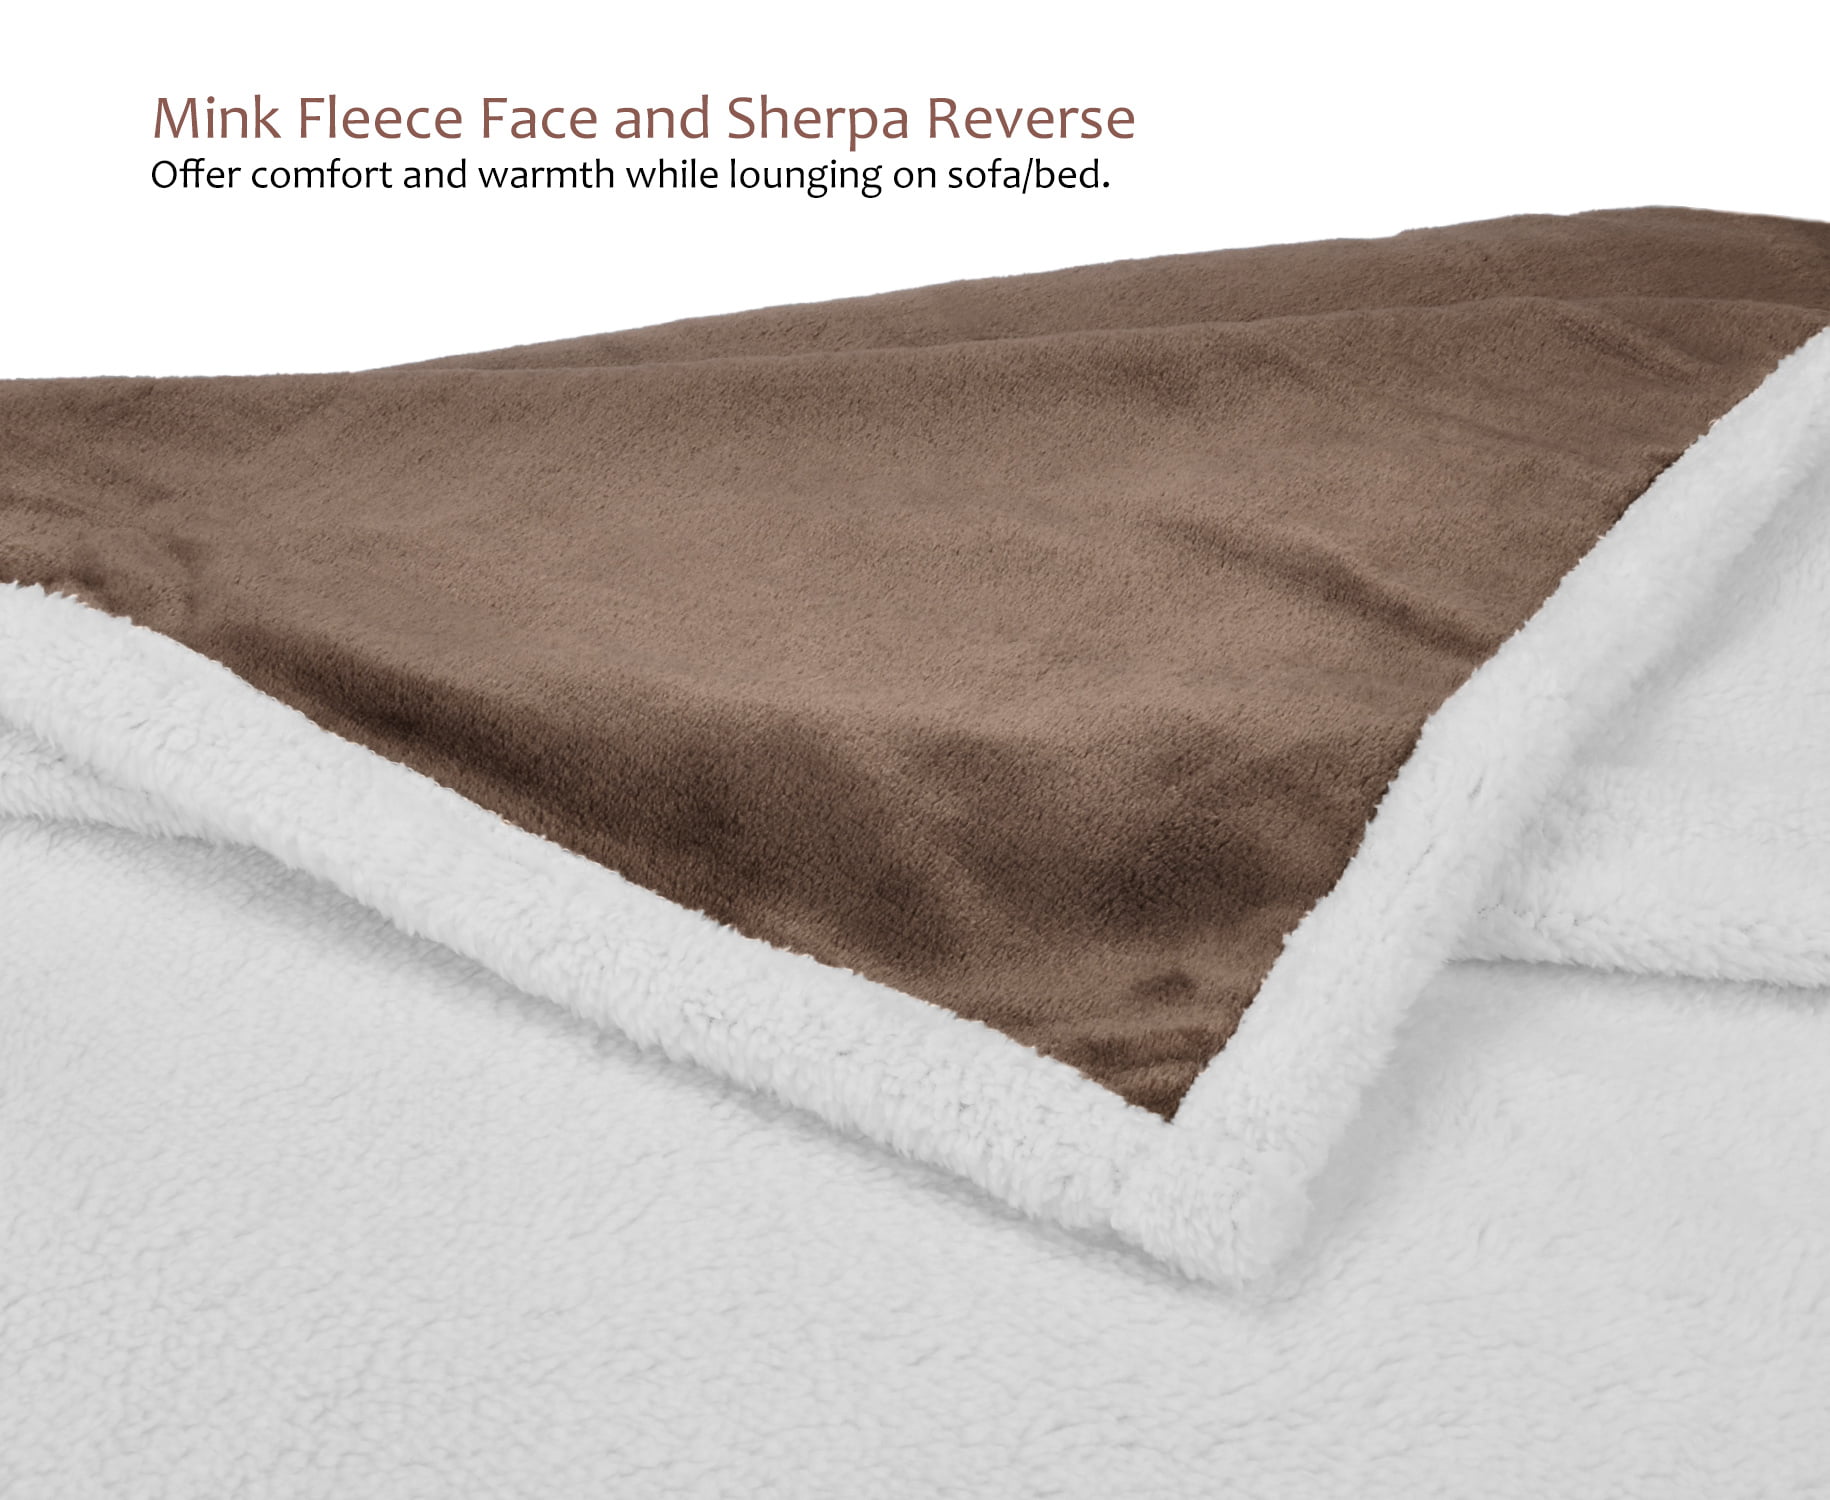 Goofy Movie Fleece/Sherpad/Mink Blanket Blanket 